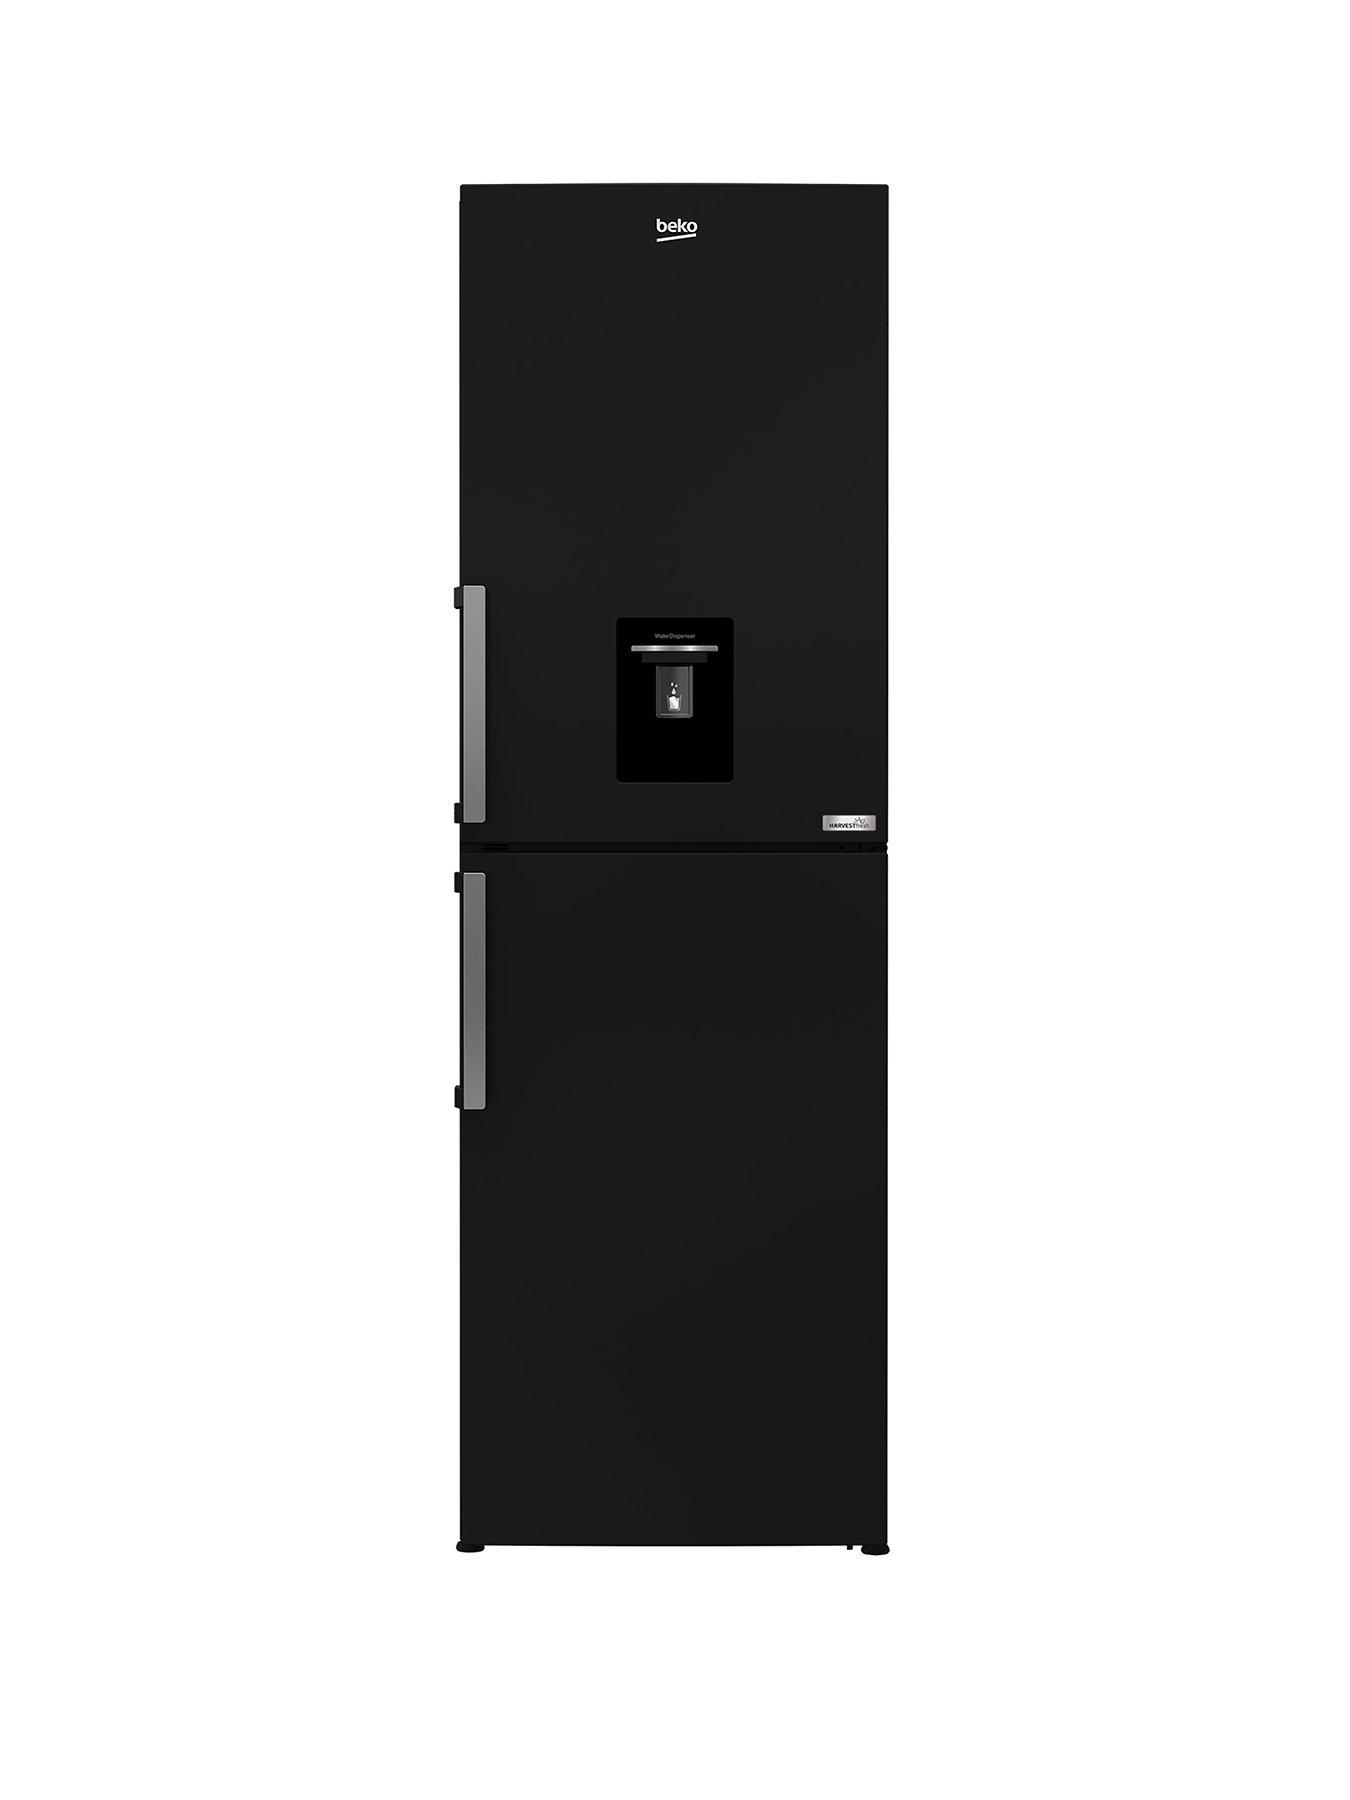 Beko Cfp3691Dvb Harvestfresh Fridge Freezer With Water Dispenser, Black